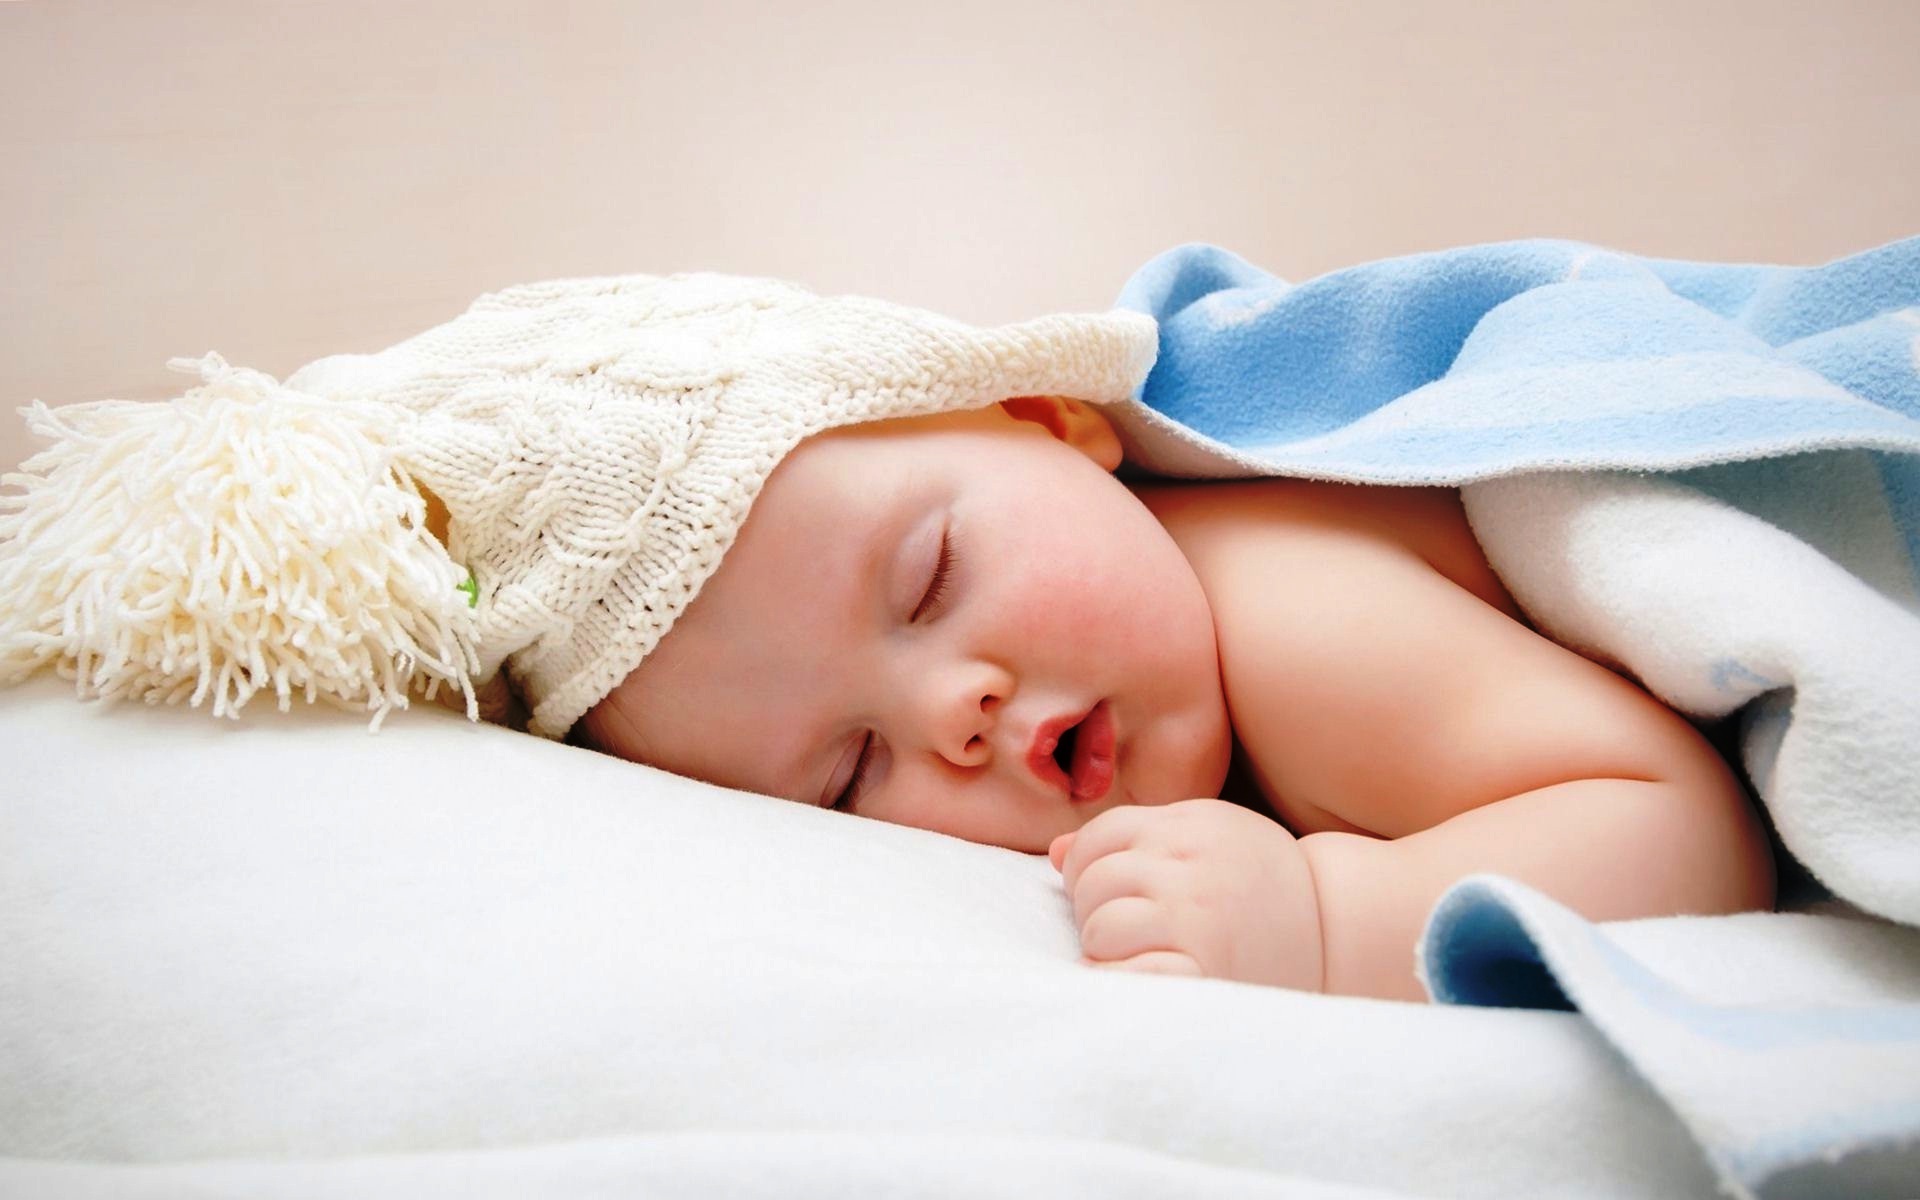 good night baby wallpaper,child,baby,photograph,skin,sleep